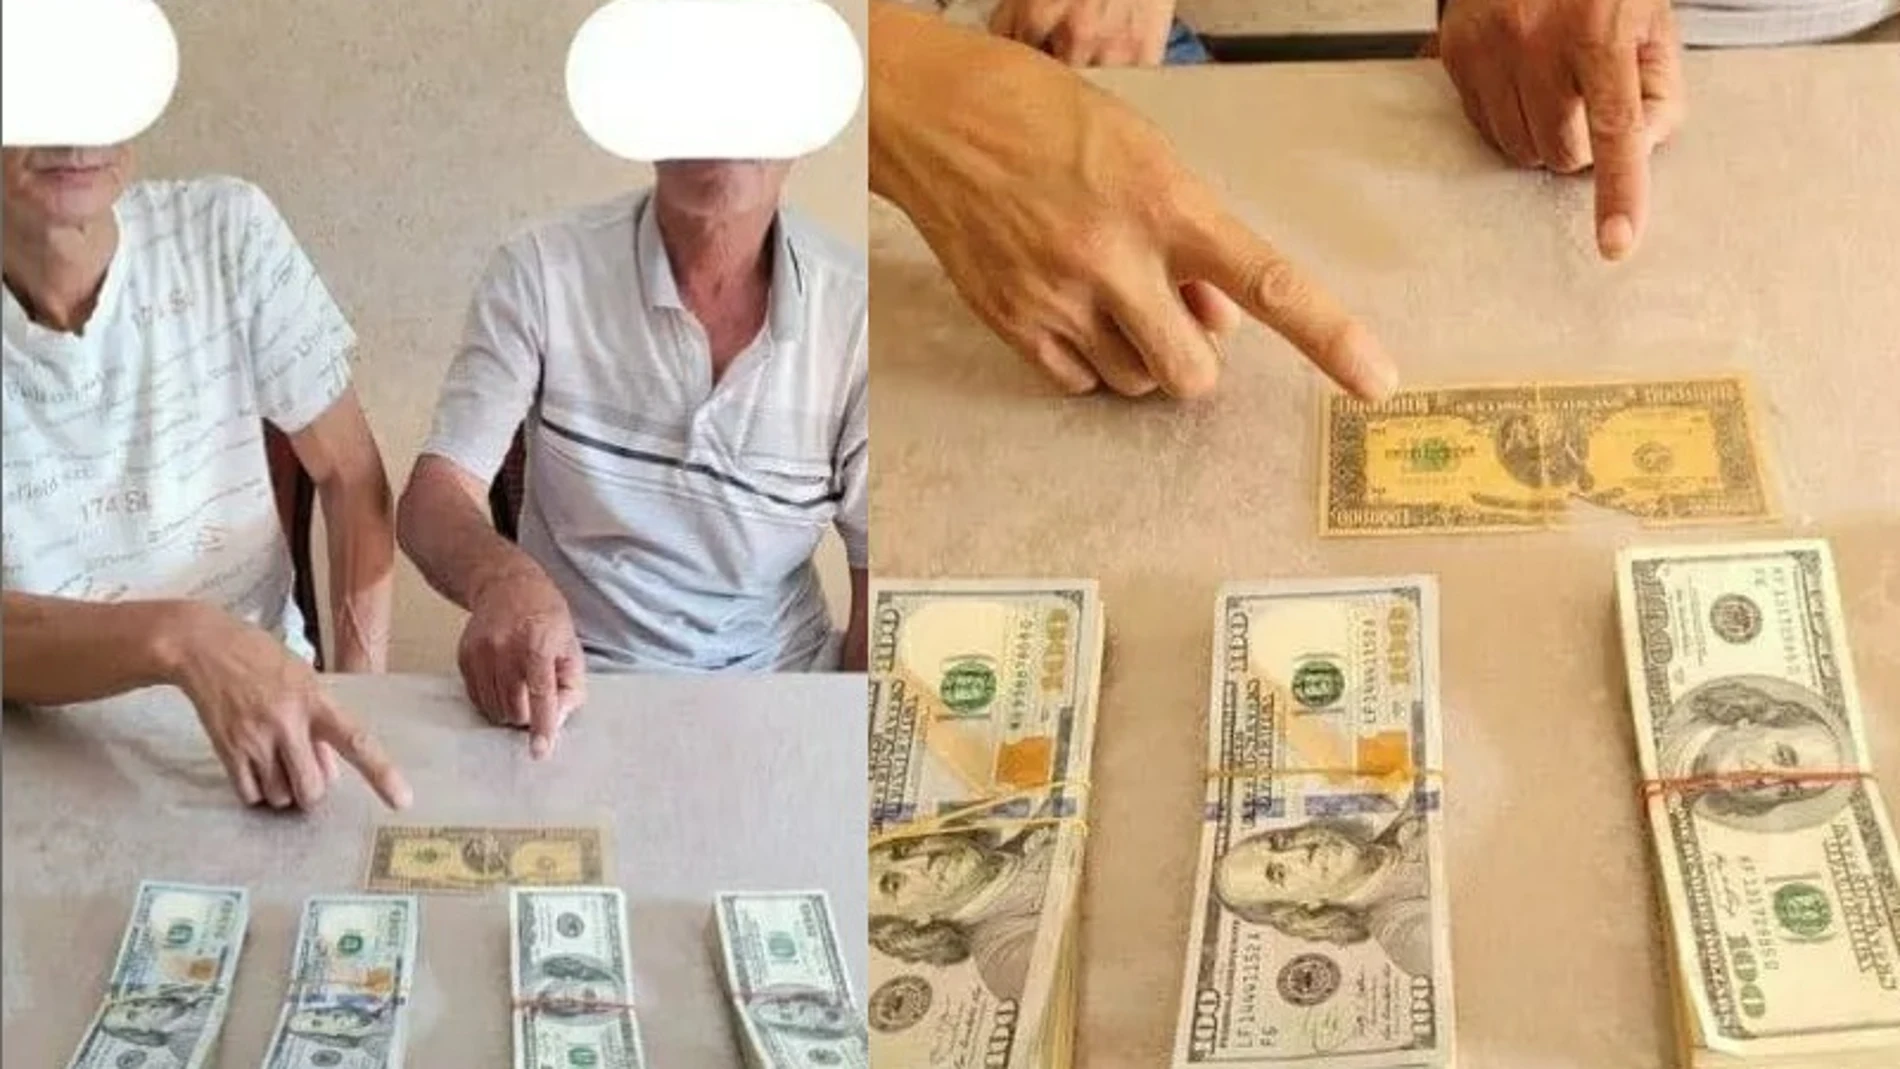 Los dos detenidos uzbekos trataron de vender el famoso billete por 40.000 dólares (unos 34.000 euros)